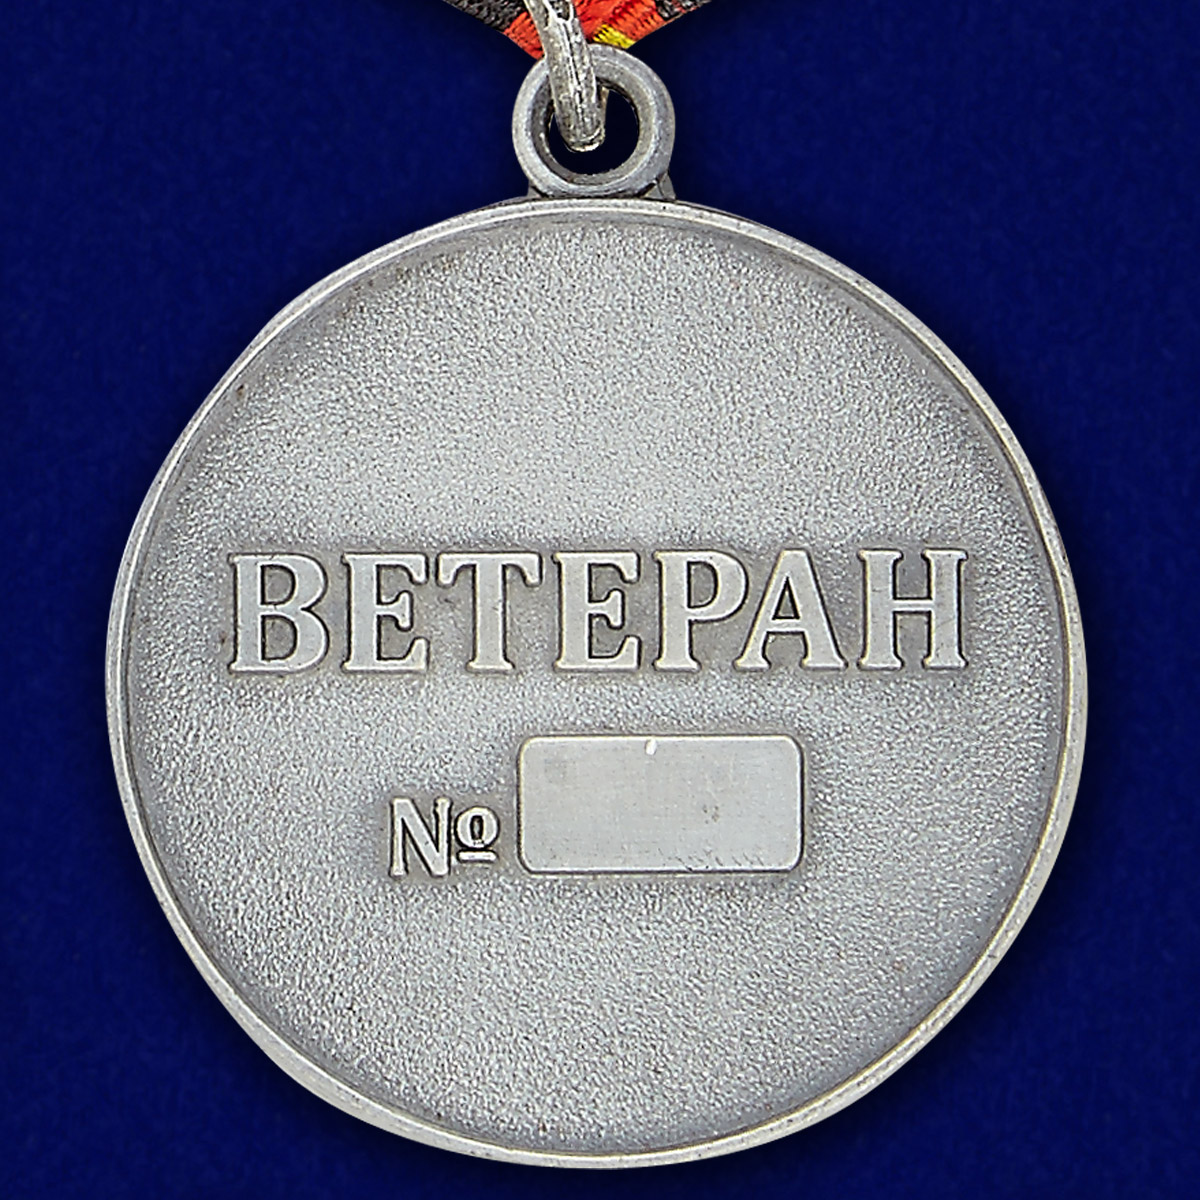 Медаль Мотострелковых войск (Ветеран)  